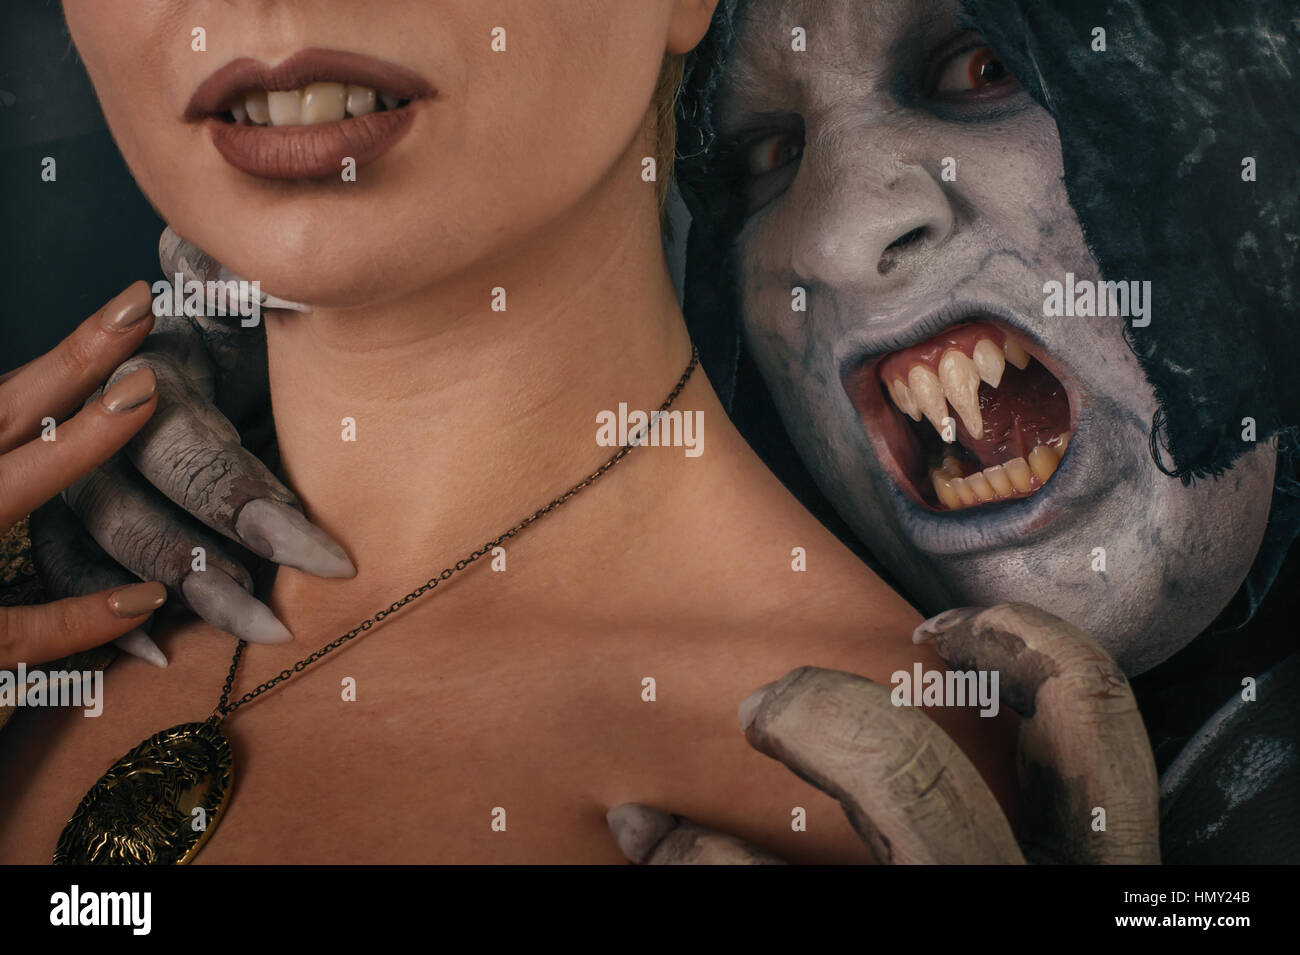 Alte Monster Vampir Dämon hält schöne Frau und bereiten sich auf ihren Hals beißt. Halloween-Fantasie-Konzept Stockfoto